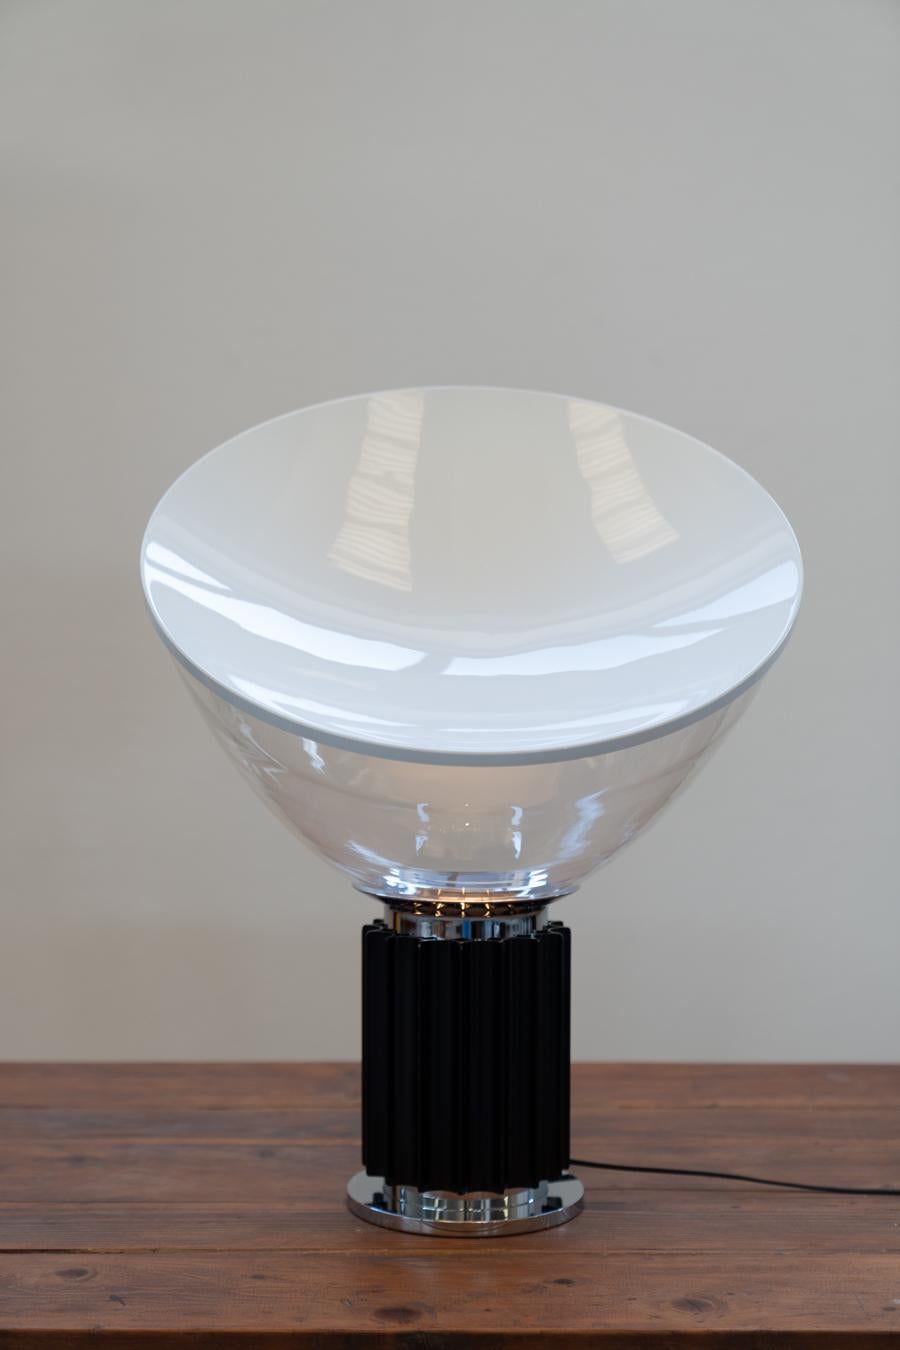 Alte Taccia-Lampe von Achille und Pier Giacomo Castiglioni, für Taccia
TACCIA  ist eine Leuchte, die von den Brüdern Castiglioni 1962 für die italienische Marke FLOS entworfen und gestaltet wurde. Sie besteht aus einem runden Sockel mit der Anmutung